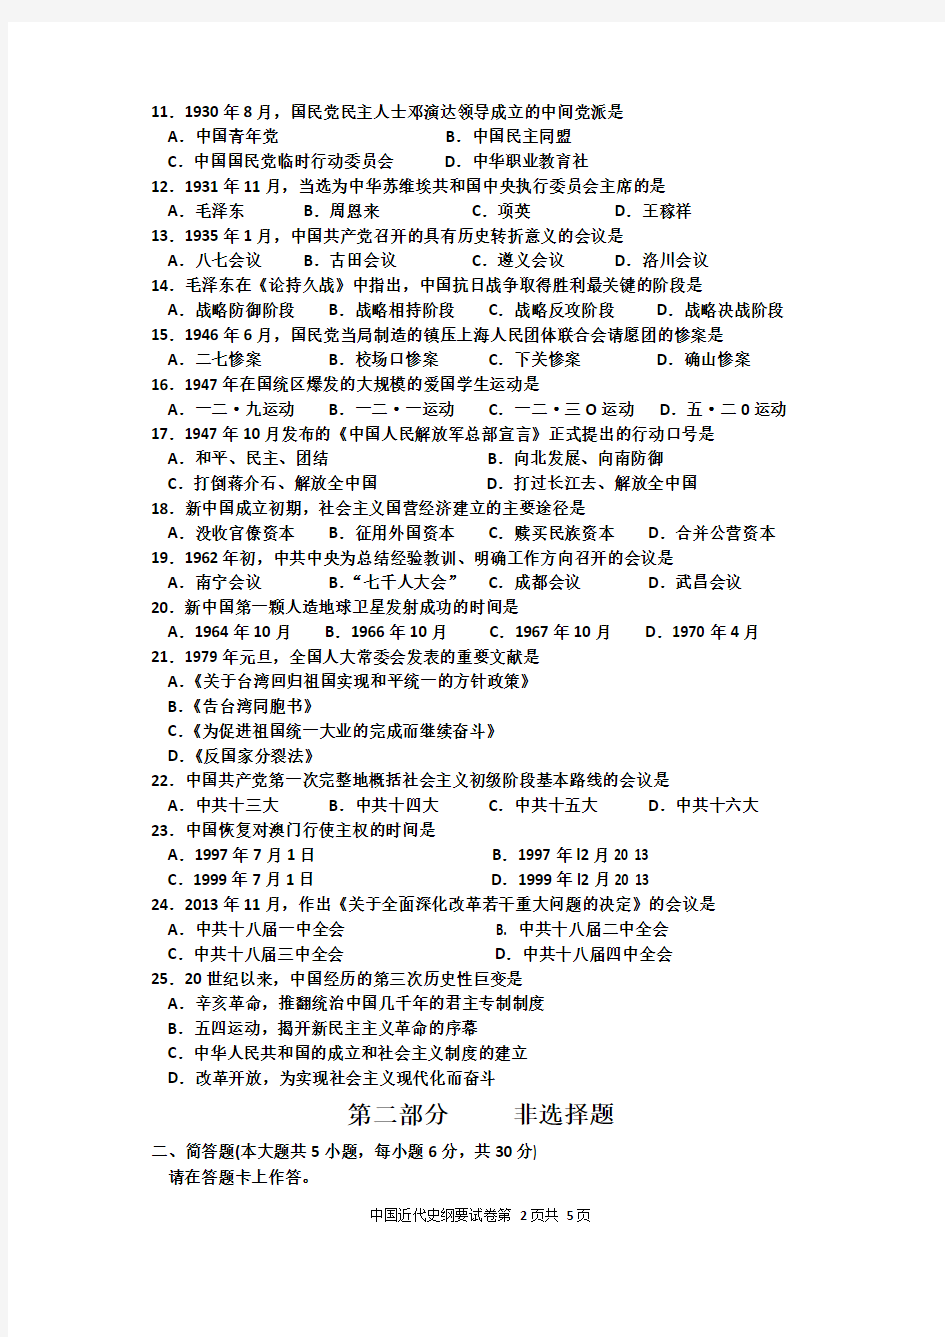 2015年10月自考《中国近现代史纲要》03708试卷和答案